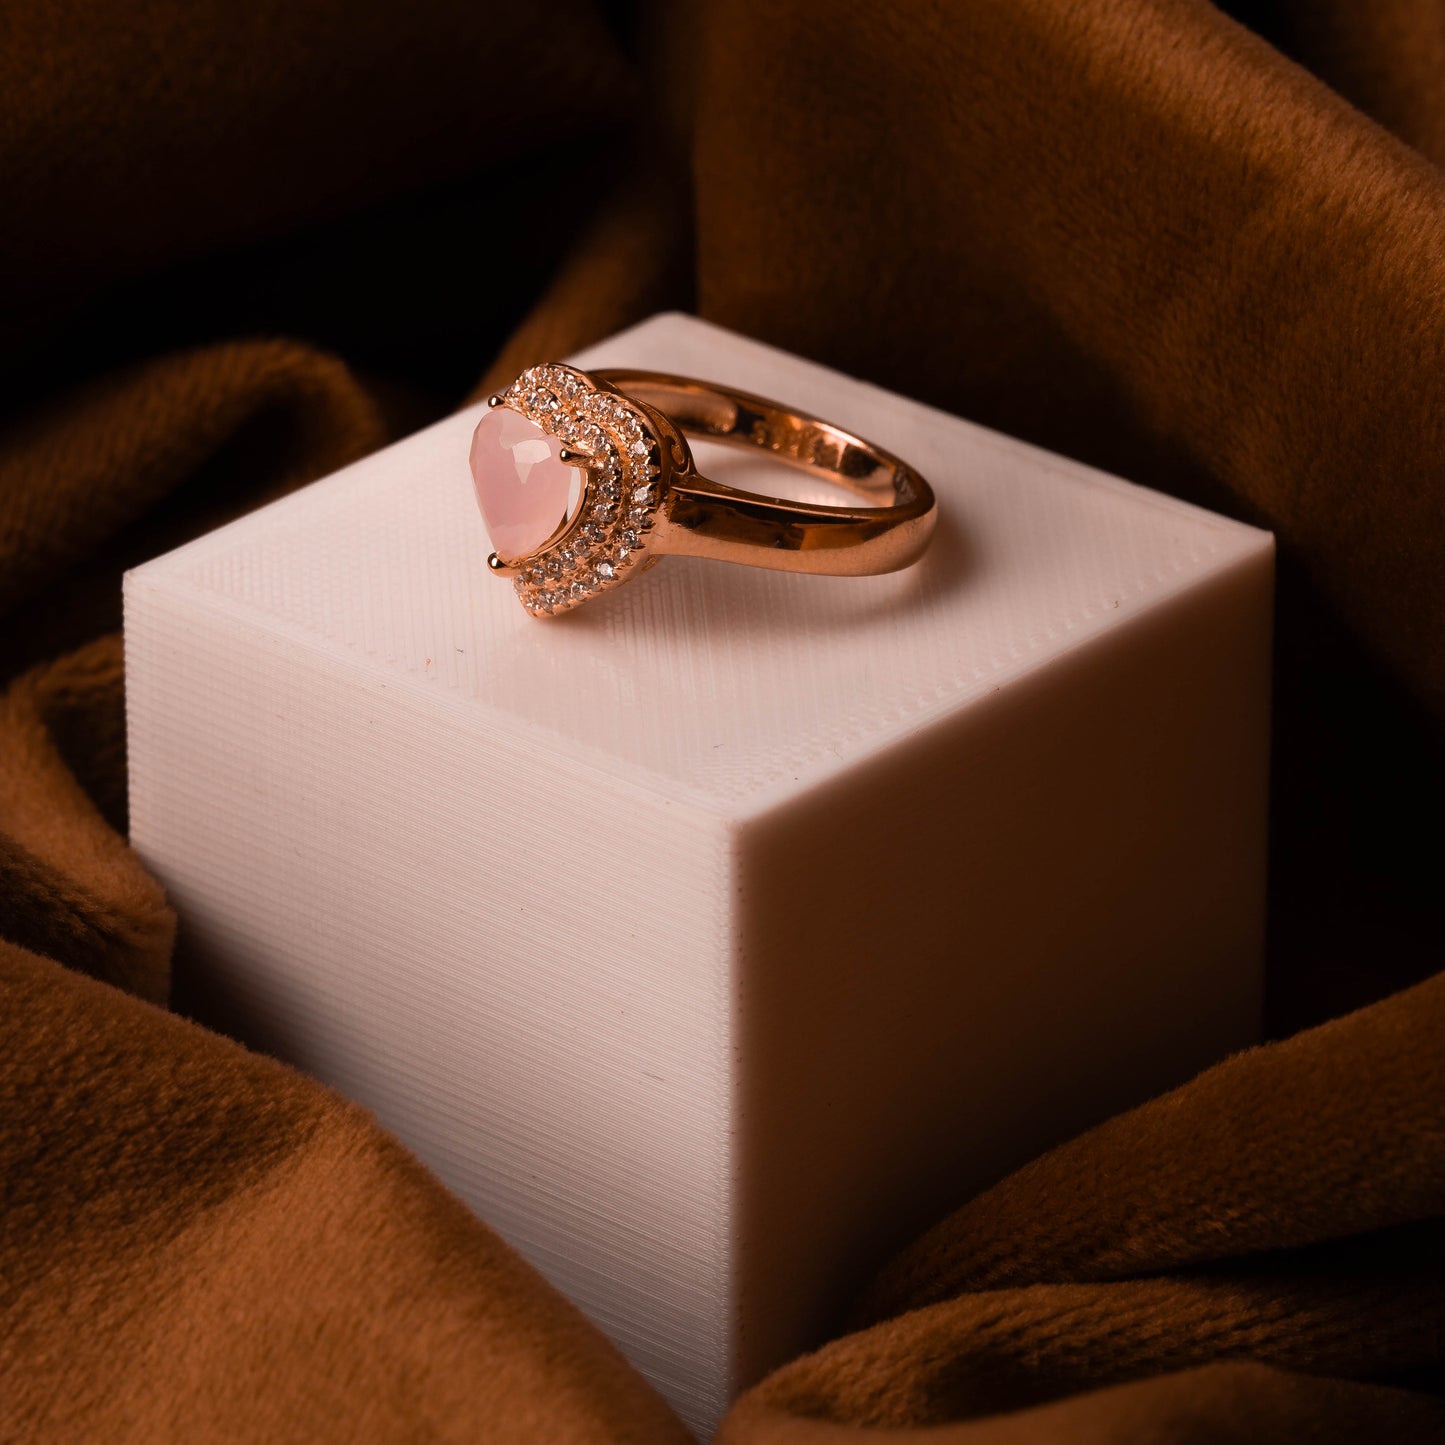 Rose Gold Pastel Pink Heart Ring